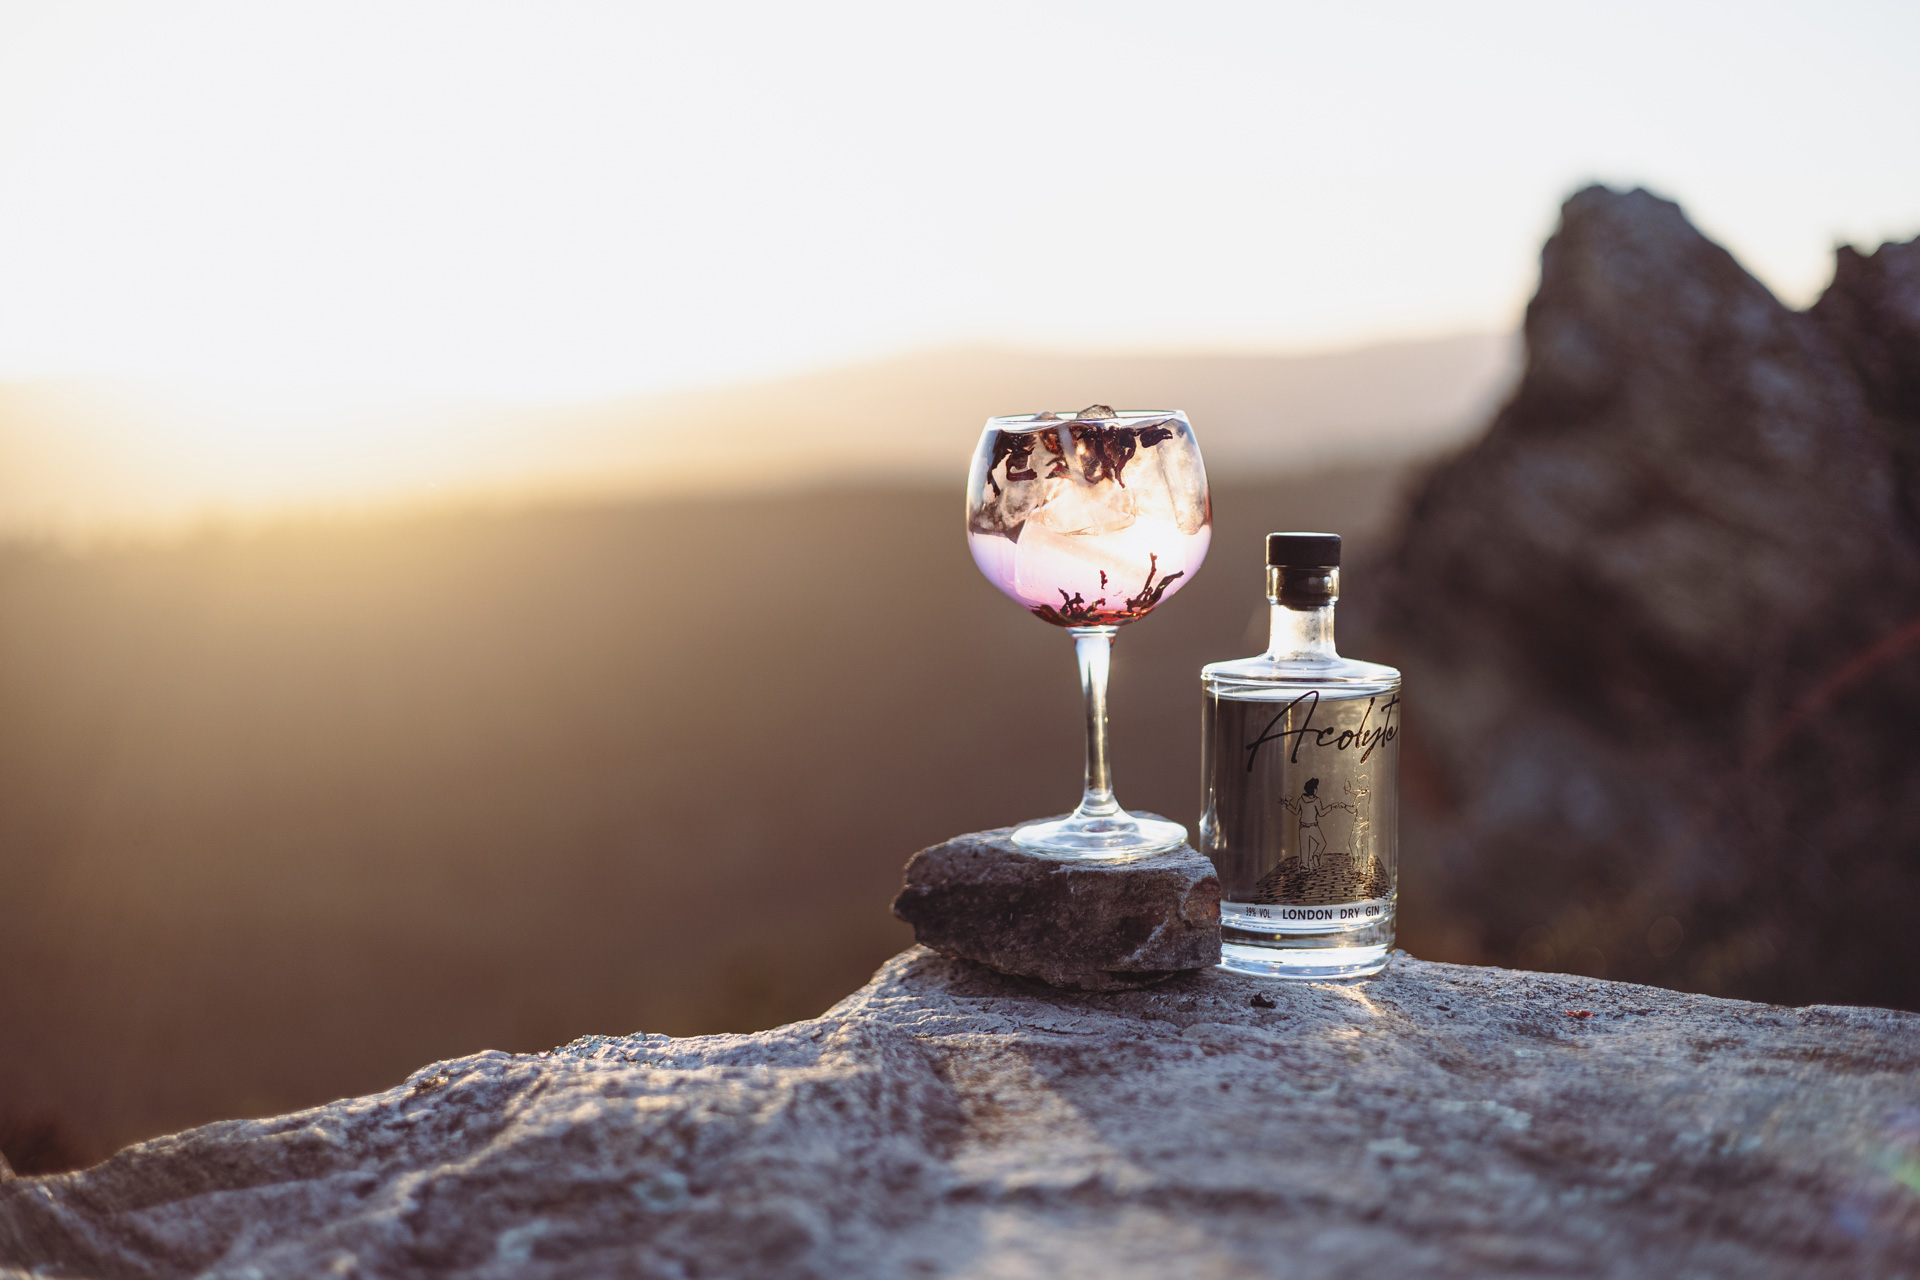 Un verre de gin acolyte préparé avec un tonic et des pétales de fleurs. On retrouve une bouteille à ses côtés devant un coucher de soleil en pleine nature.